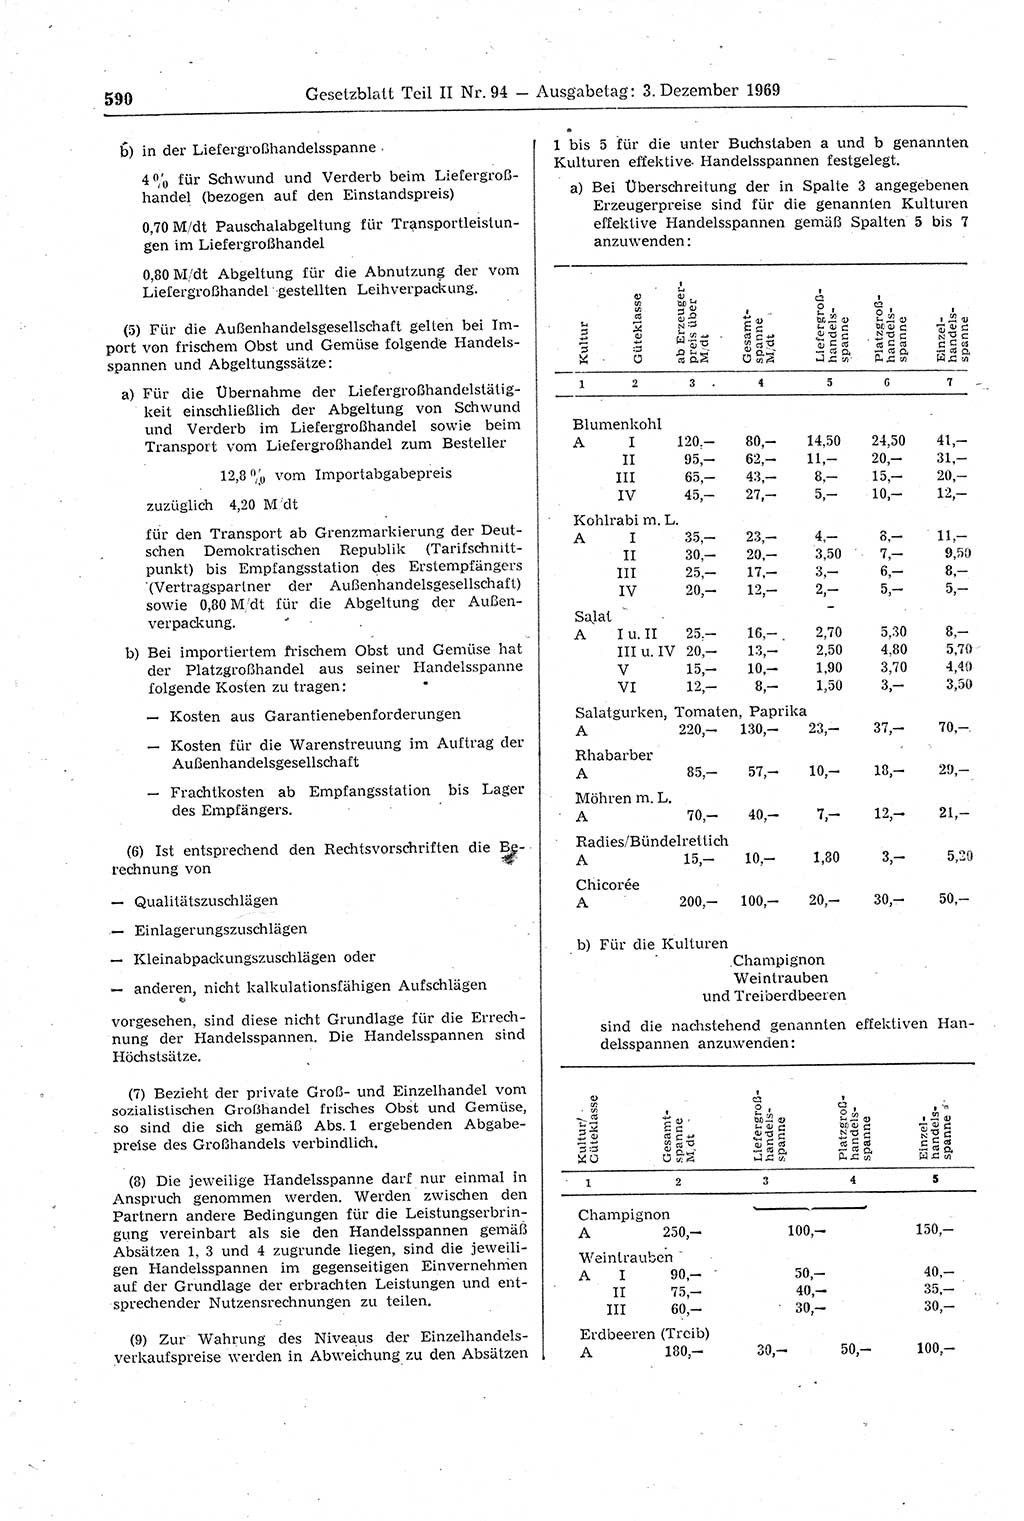 Gesetzblatt (GBl.) der Deutschen Demokratischen Republik (DDR) Teil ⅠⅠ 1969, Seite 590 (GBl. DDR ⅠⅠ 1969, S. 590)